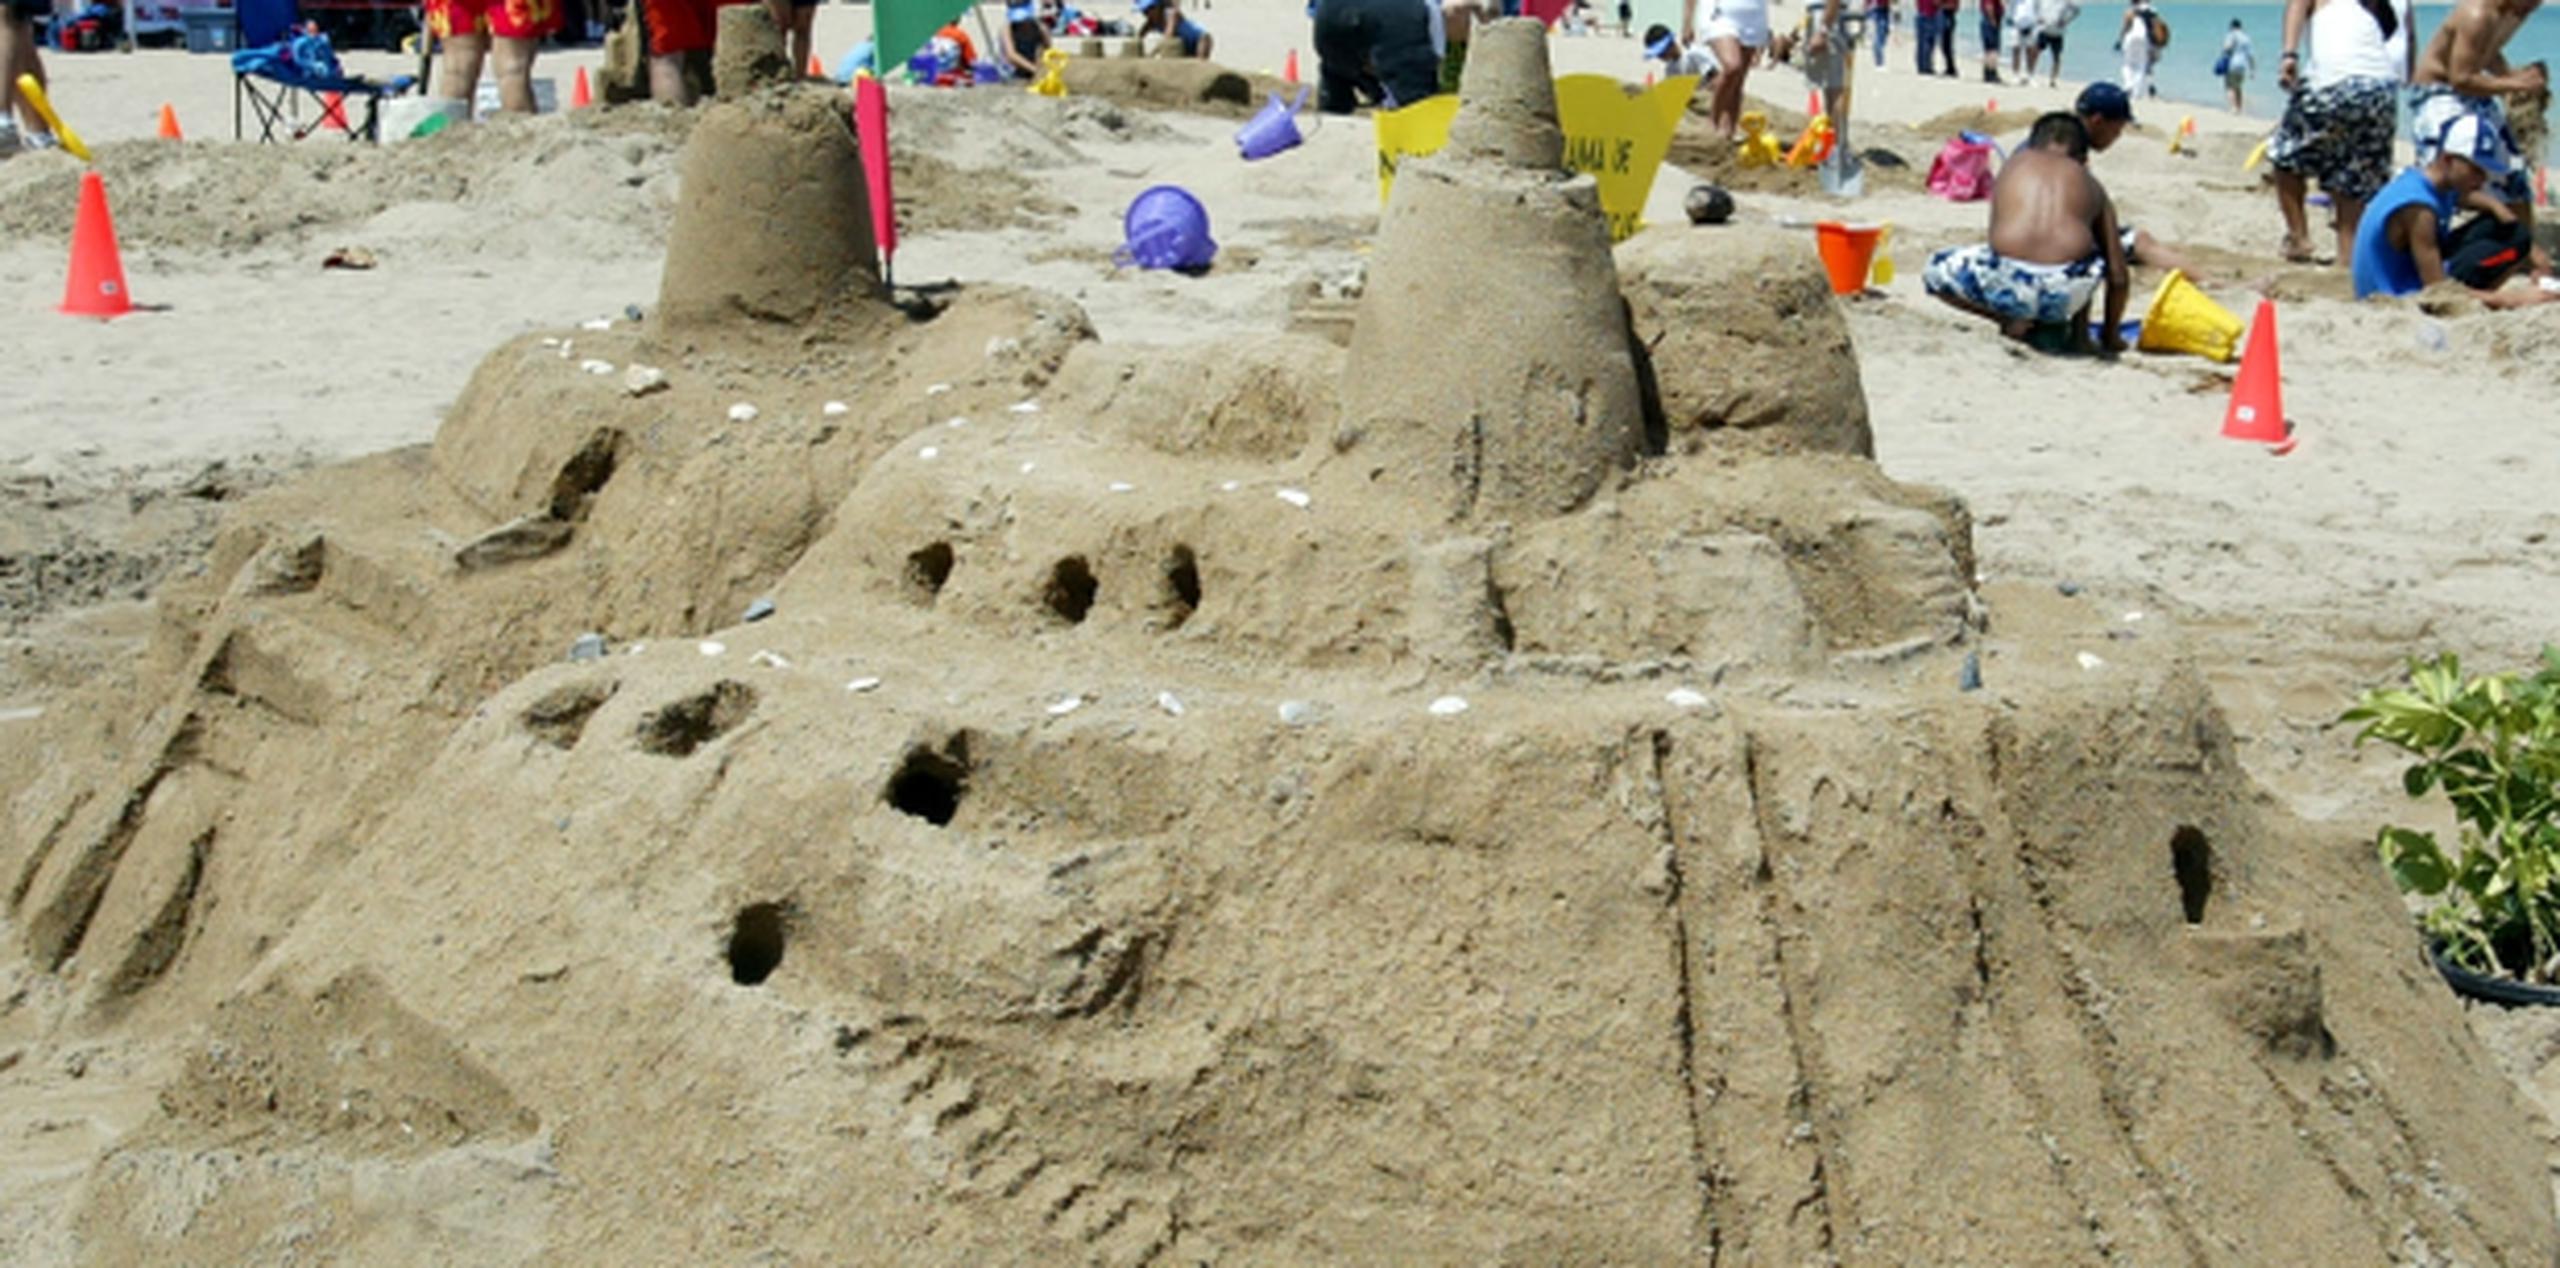 Las personas que construyan la mayor cantidad de castillos de arena obtendrán 1,500 dólares de premio. (Archivo)